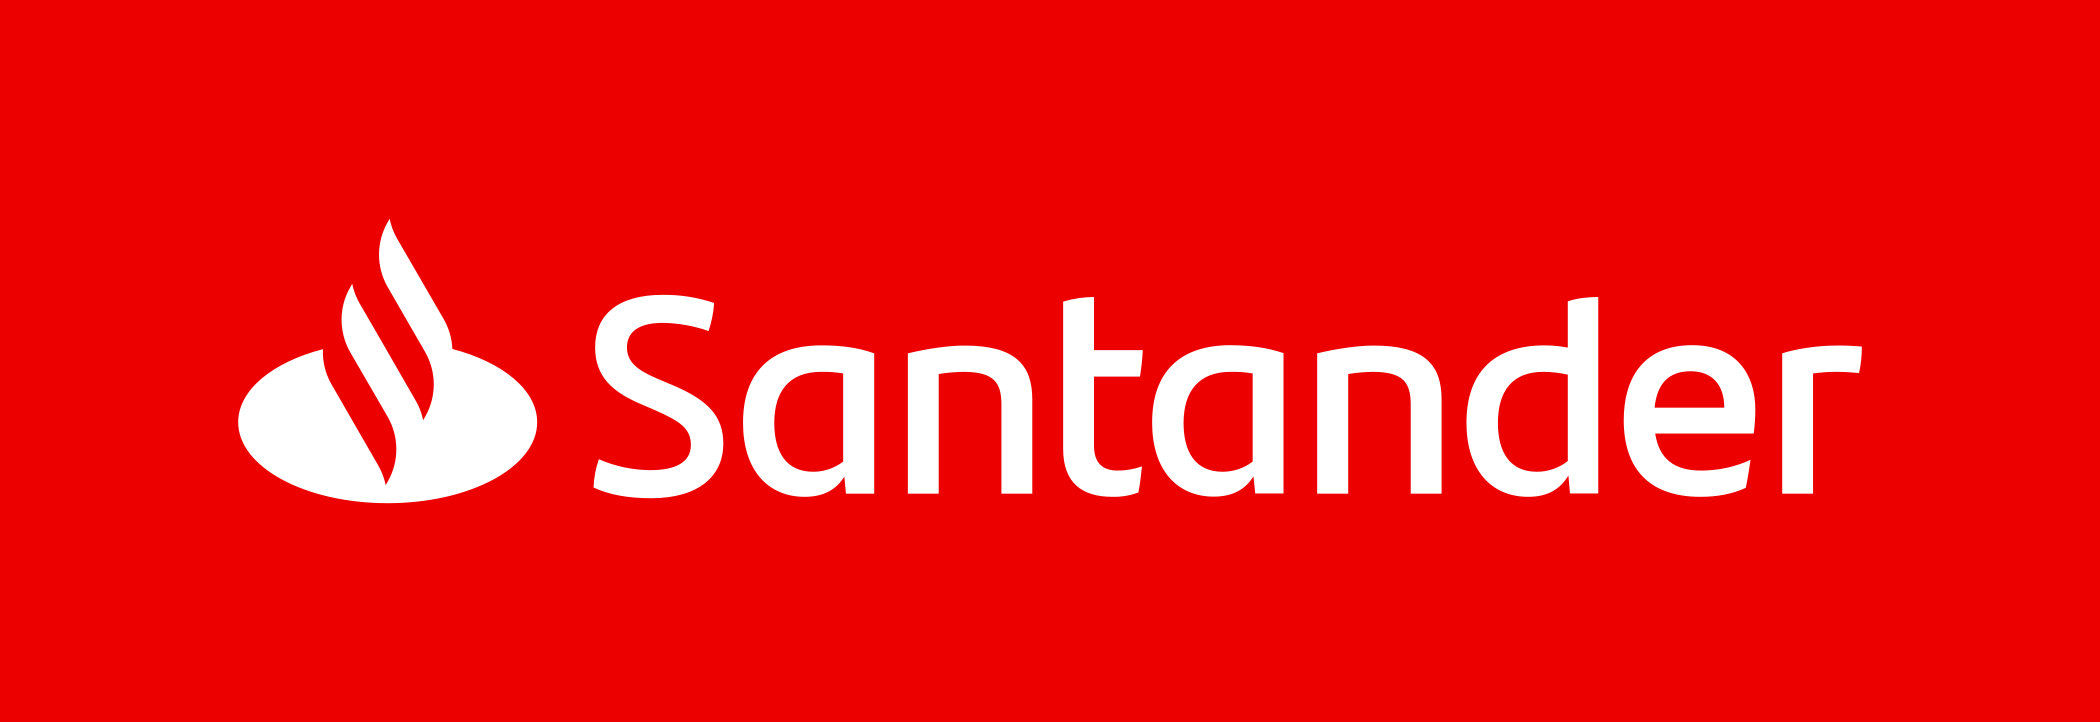 Tarjeta de Crédito Santander Black